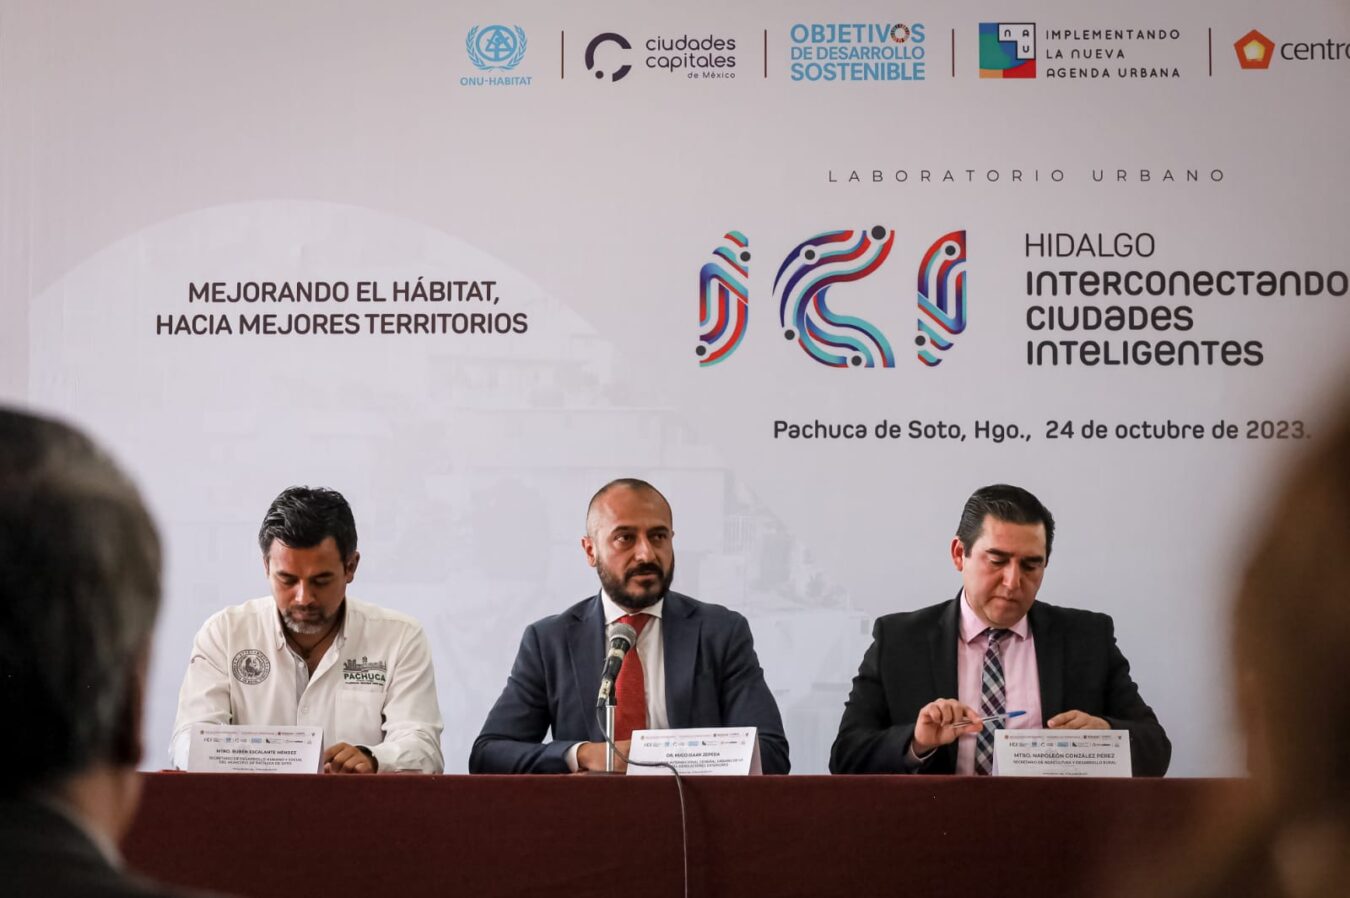 Se realizará el Laboratorio Urbano: Interconectando Ciudades Inteligentes, capítulo Hidalgo